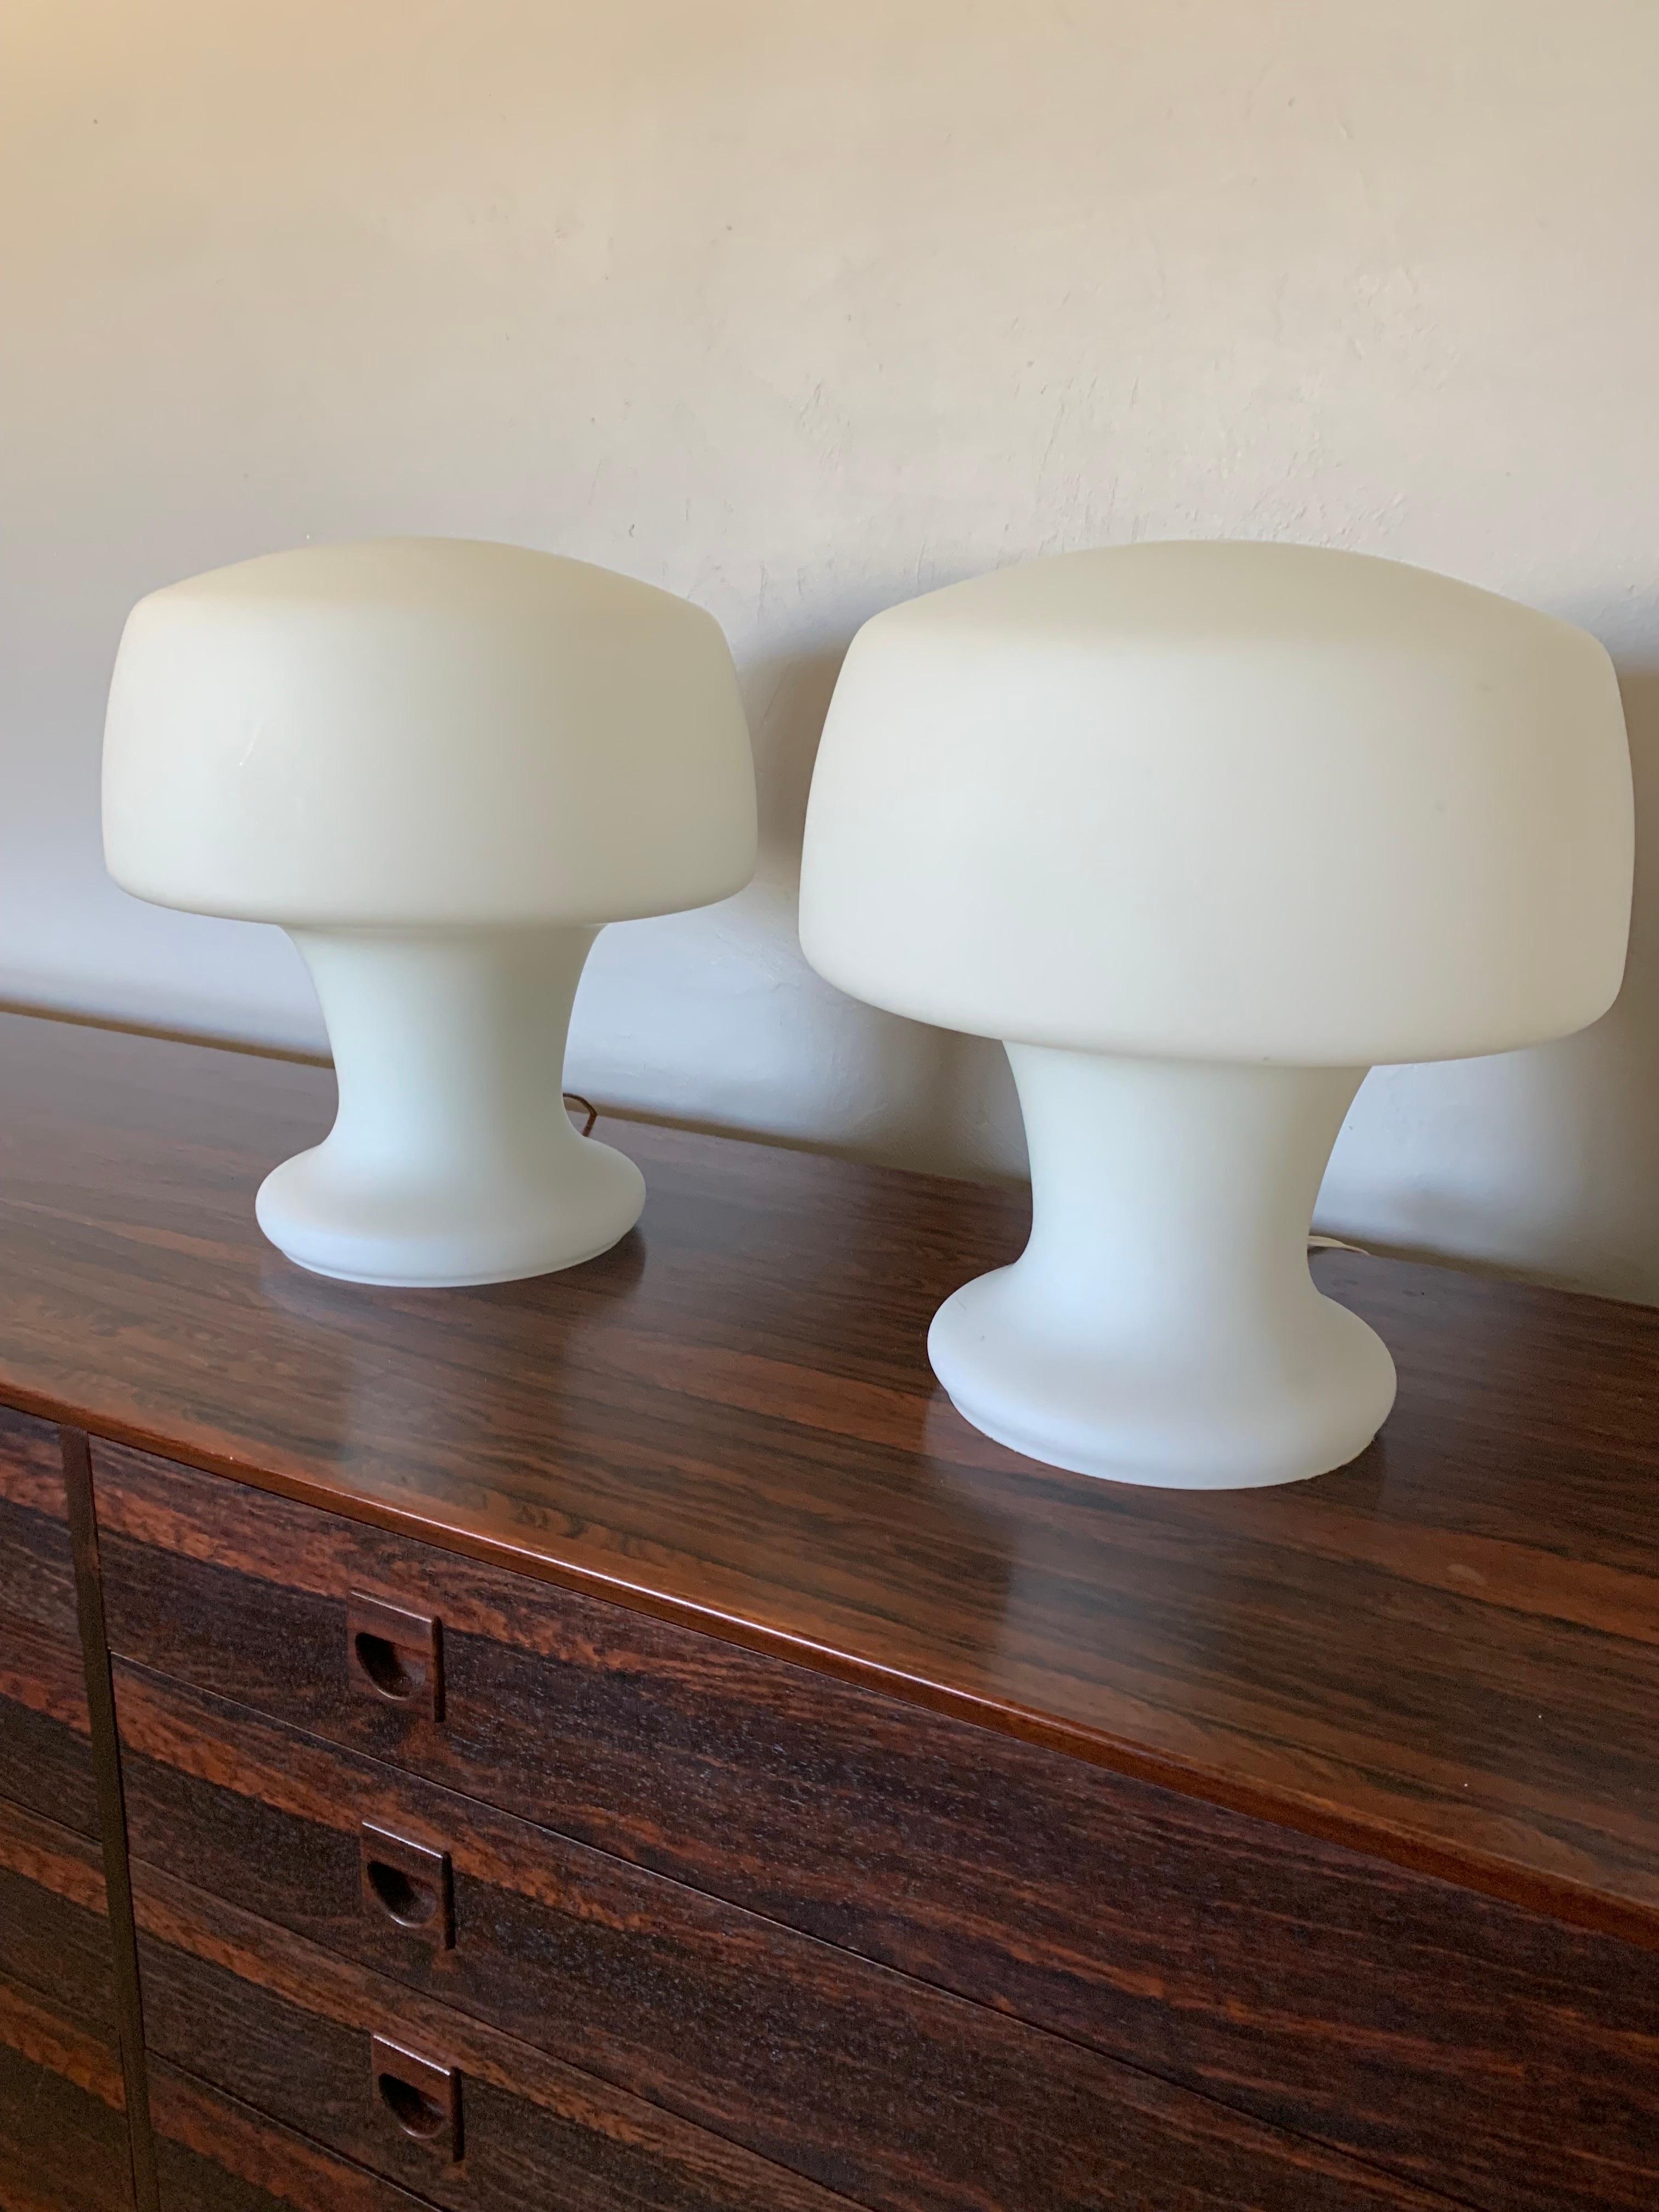 Fantastique paire de lampes de table Laurel Studio en forme de champignon. Le verre blanc opaque soufflé à la main forme un champignon sculptural unique. Fabriqué à partir d'un morceau de verre solide avec un cordon et un interrupteur pour l'allumer